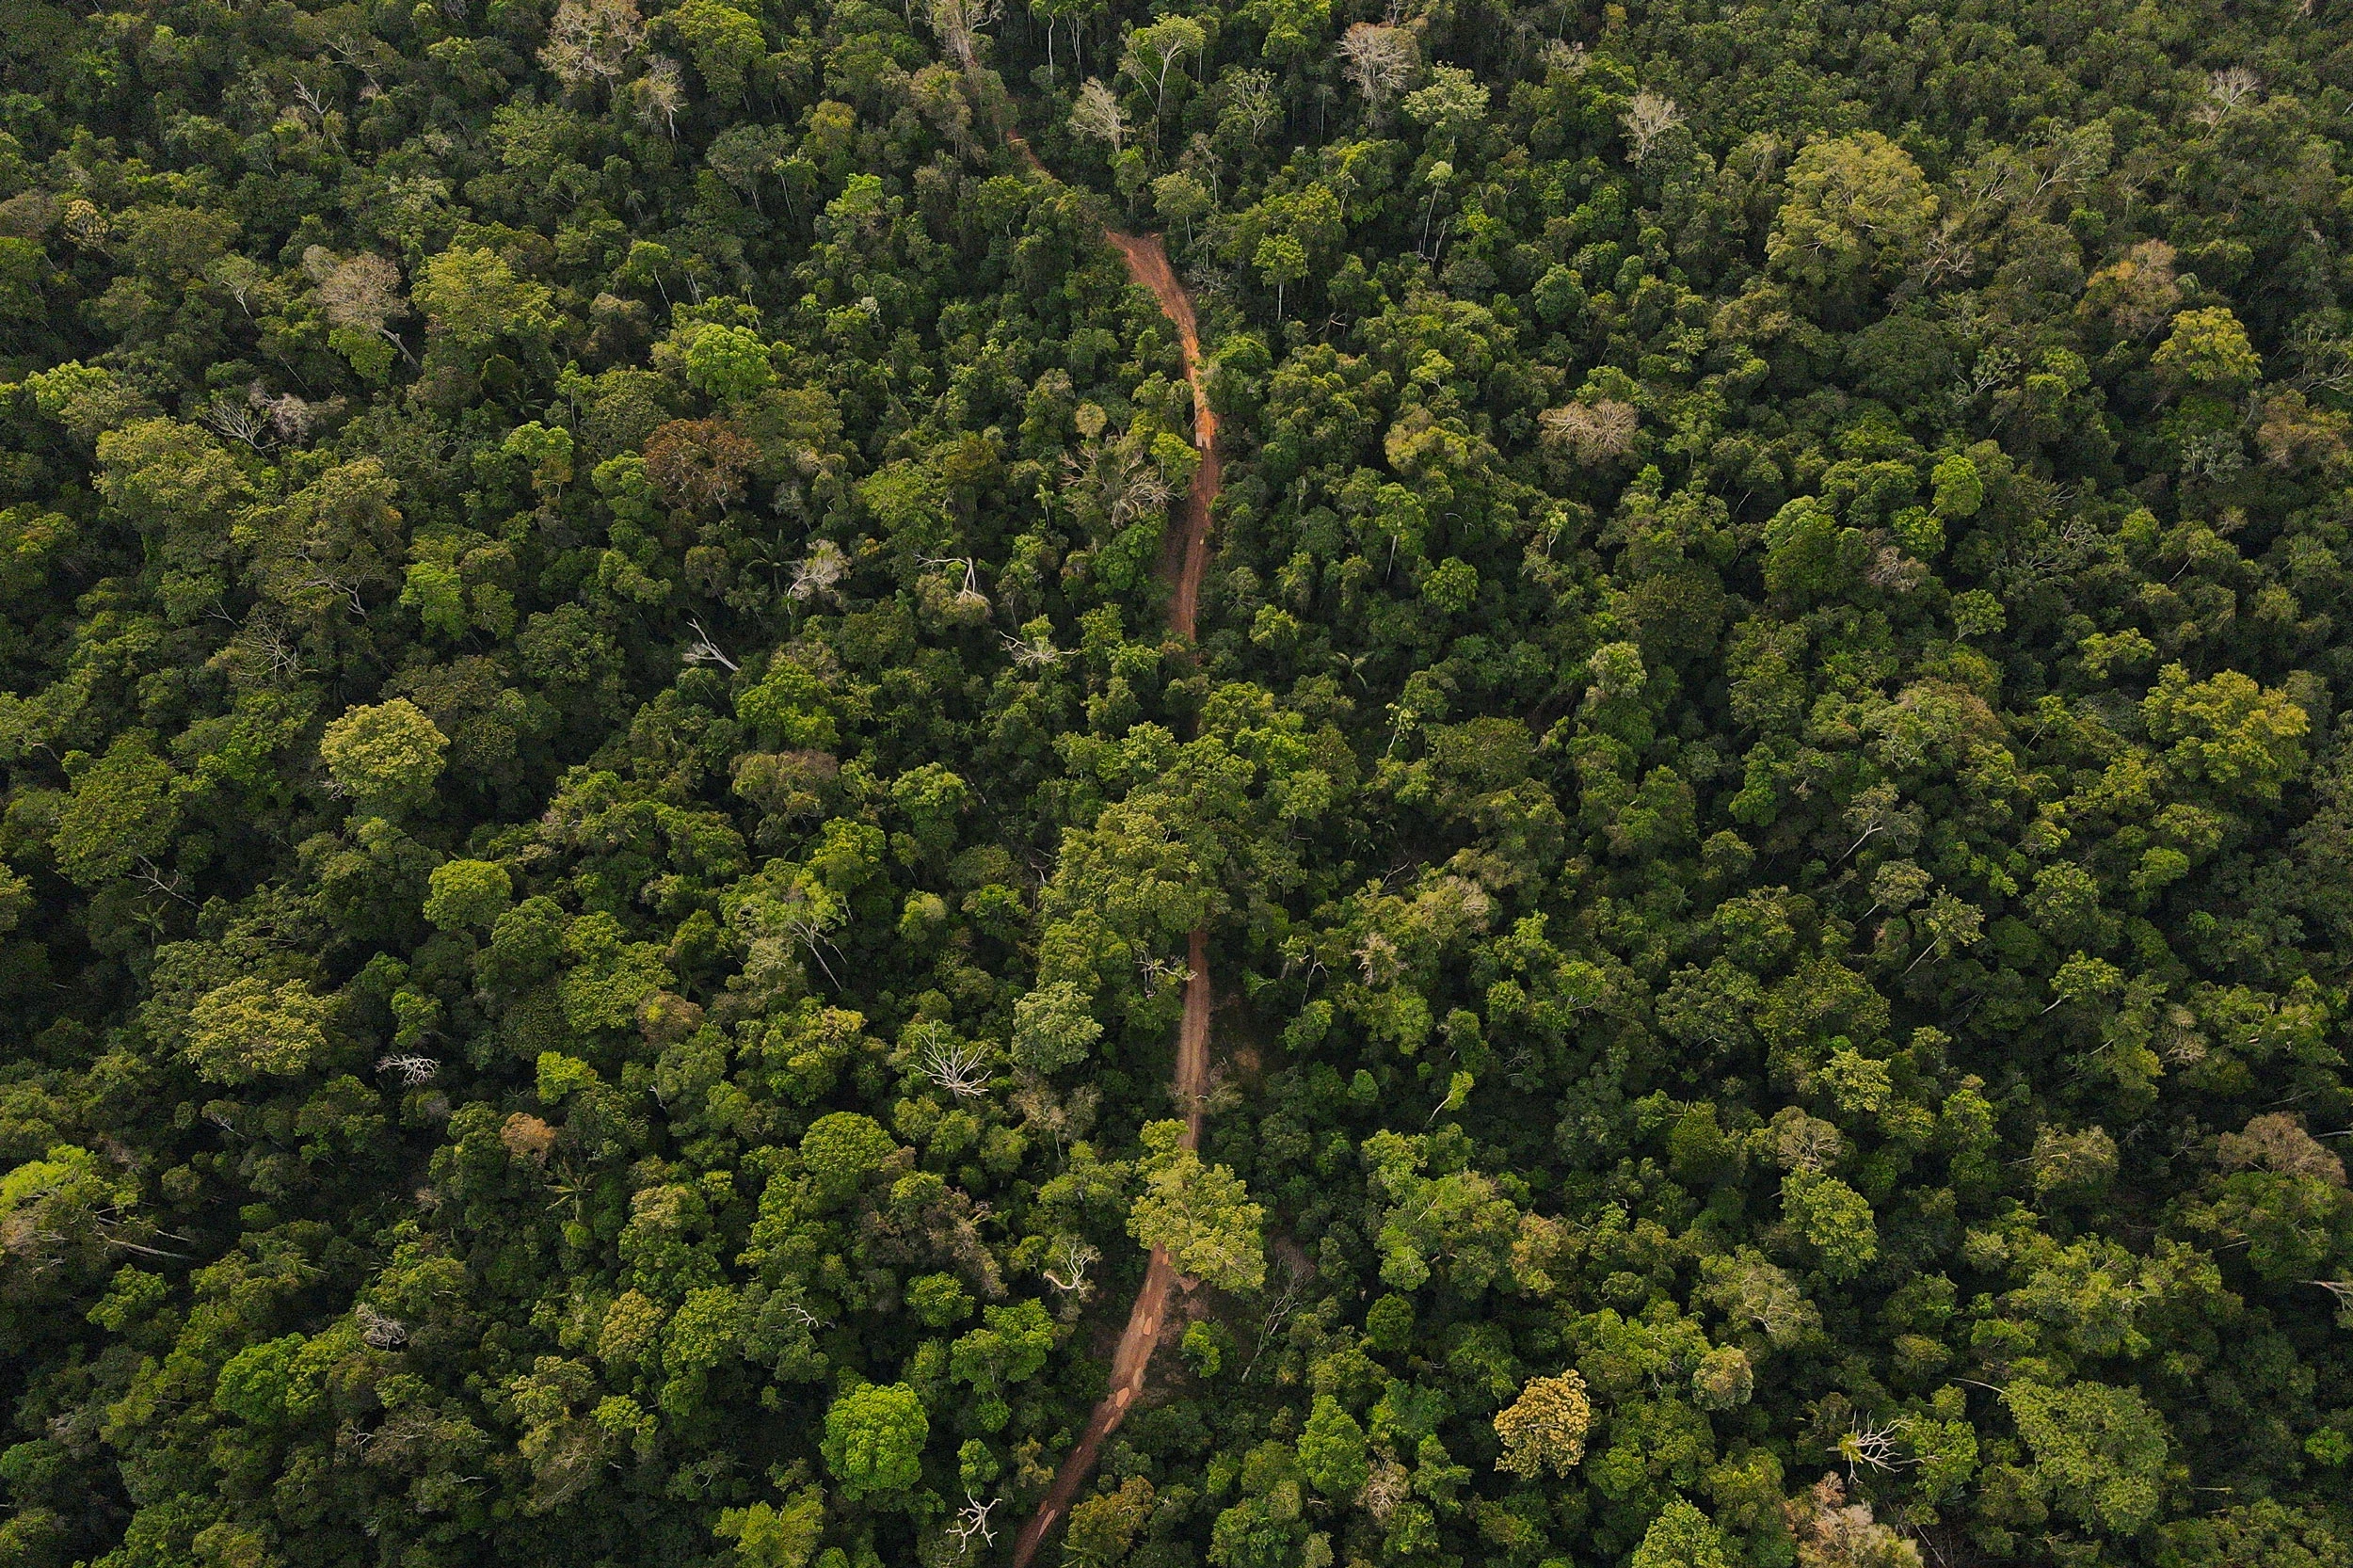 Vista aerea de estradas de retirada ilegal de madeira  nas proximidades da Aldeia Buriti na Terra Indigena Kaxarari, localizada proximo ao distrito de Vista Alegre do Abunã, dritrito de Porto Velho, Rondonia. 09 de agosto de 2022. Foto: Bruno Kelly